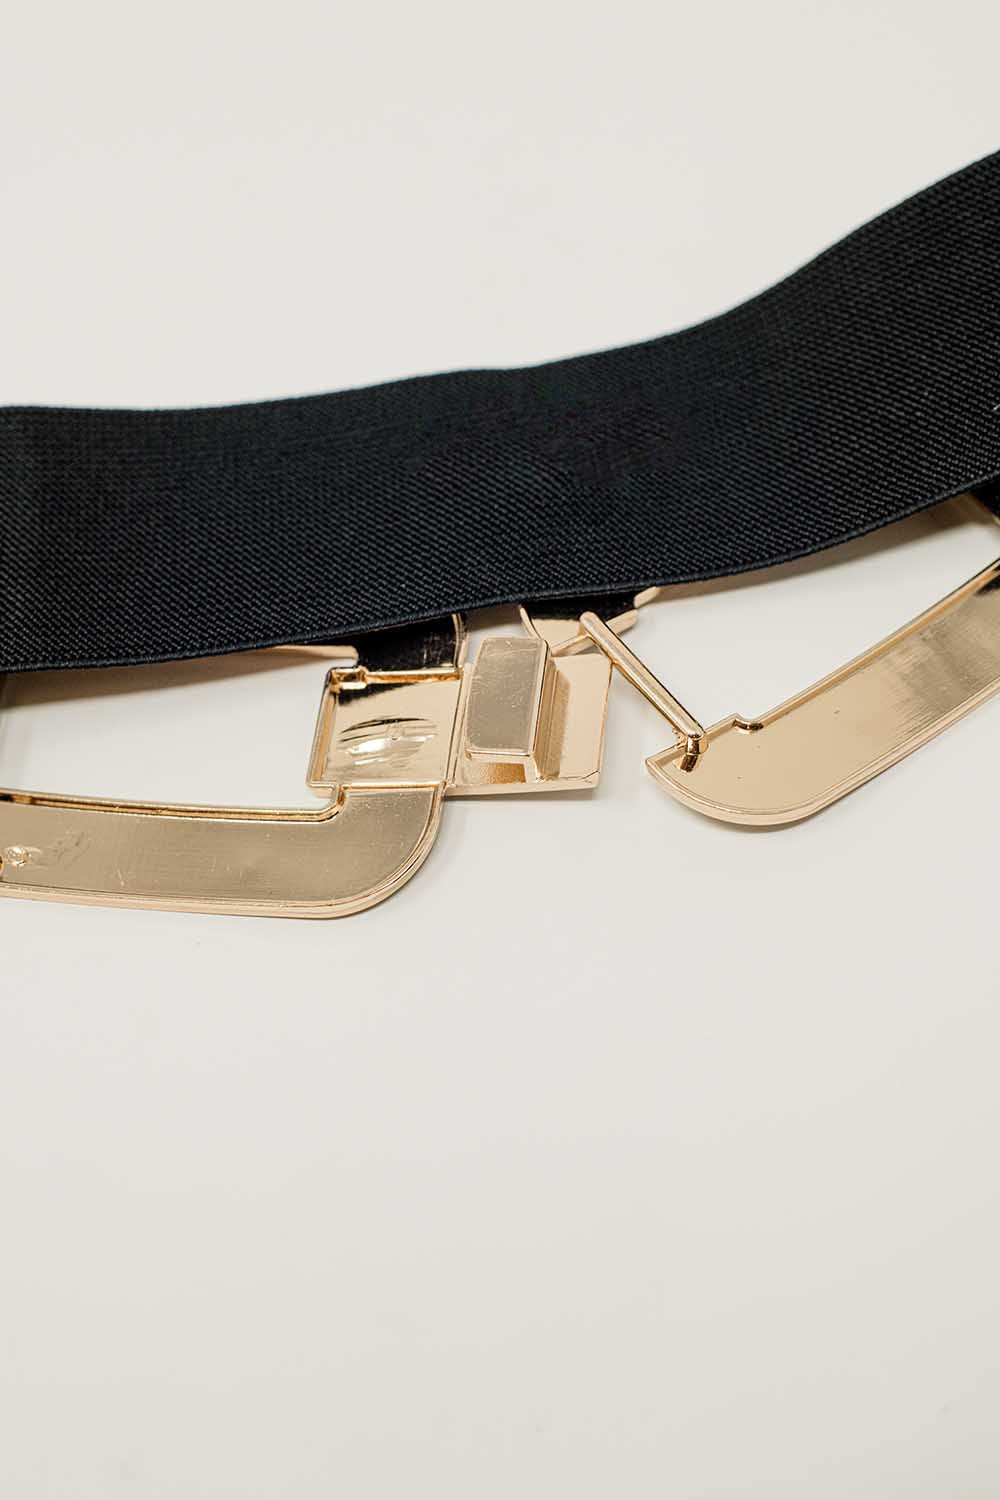 Cinturón elástico negro con doble hebilla ovalada con incrustaciones de strass